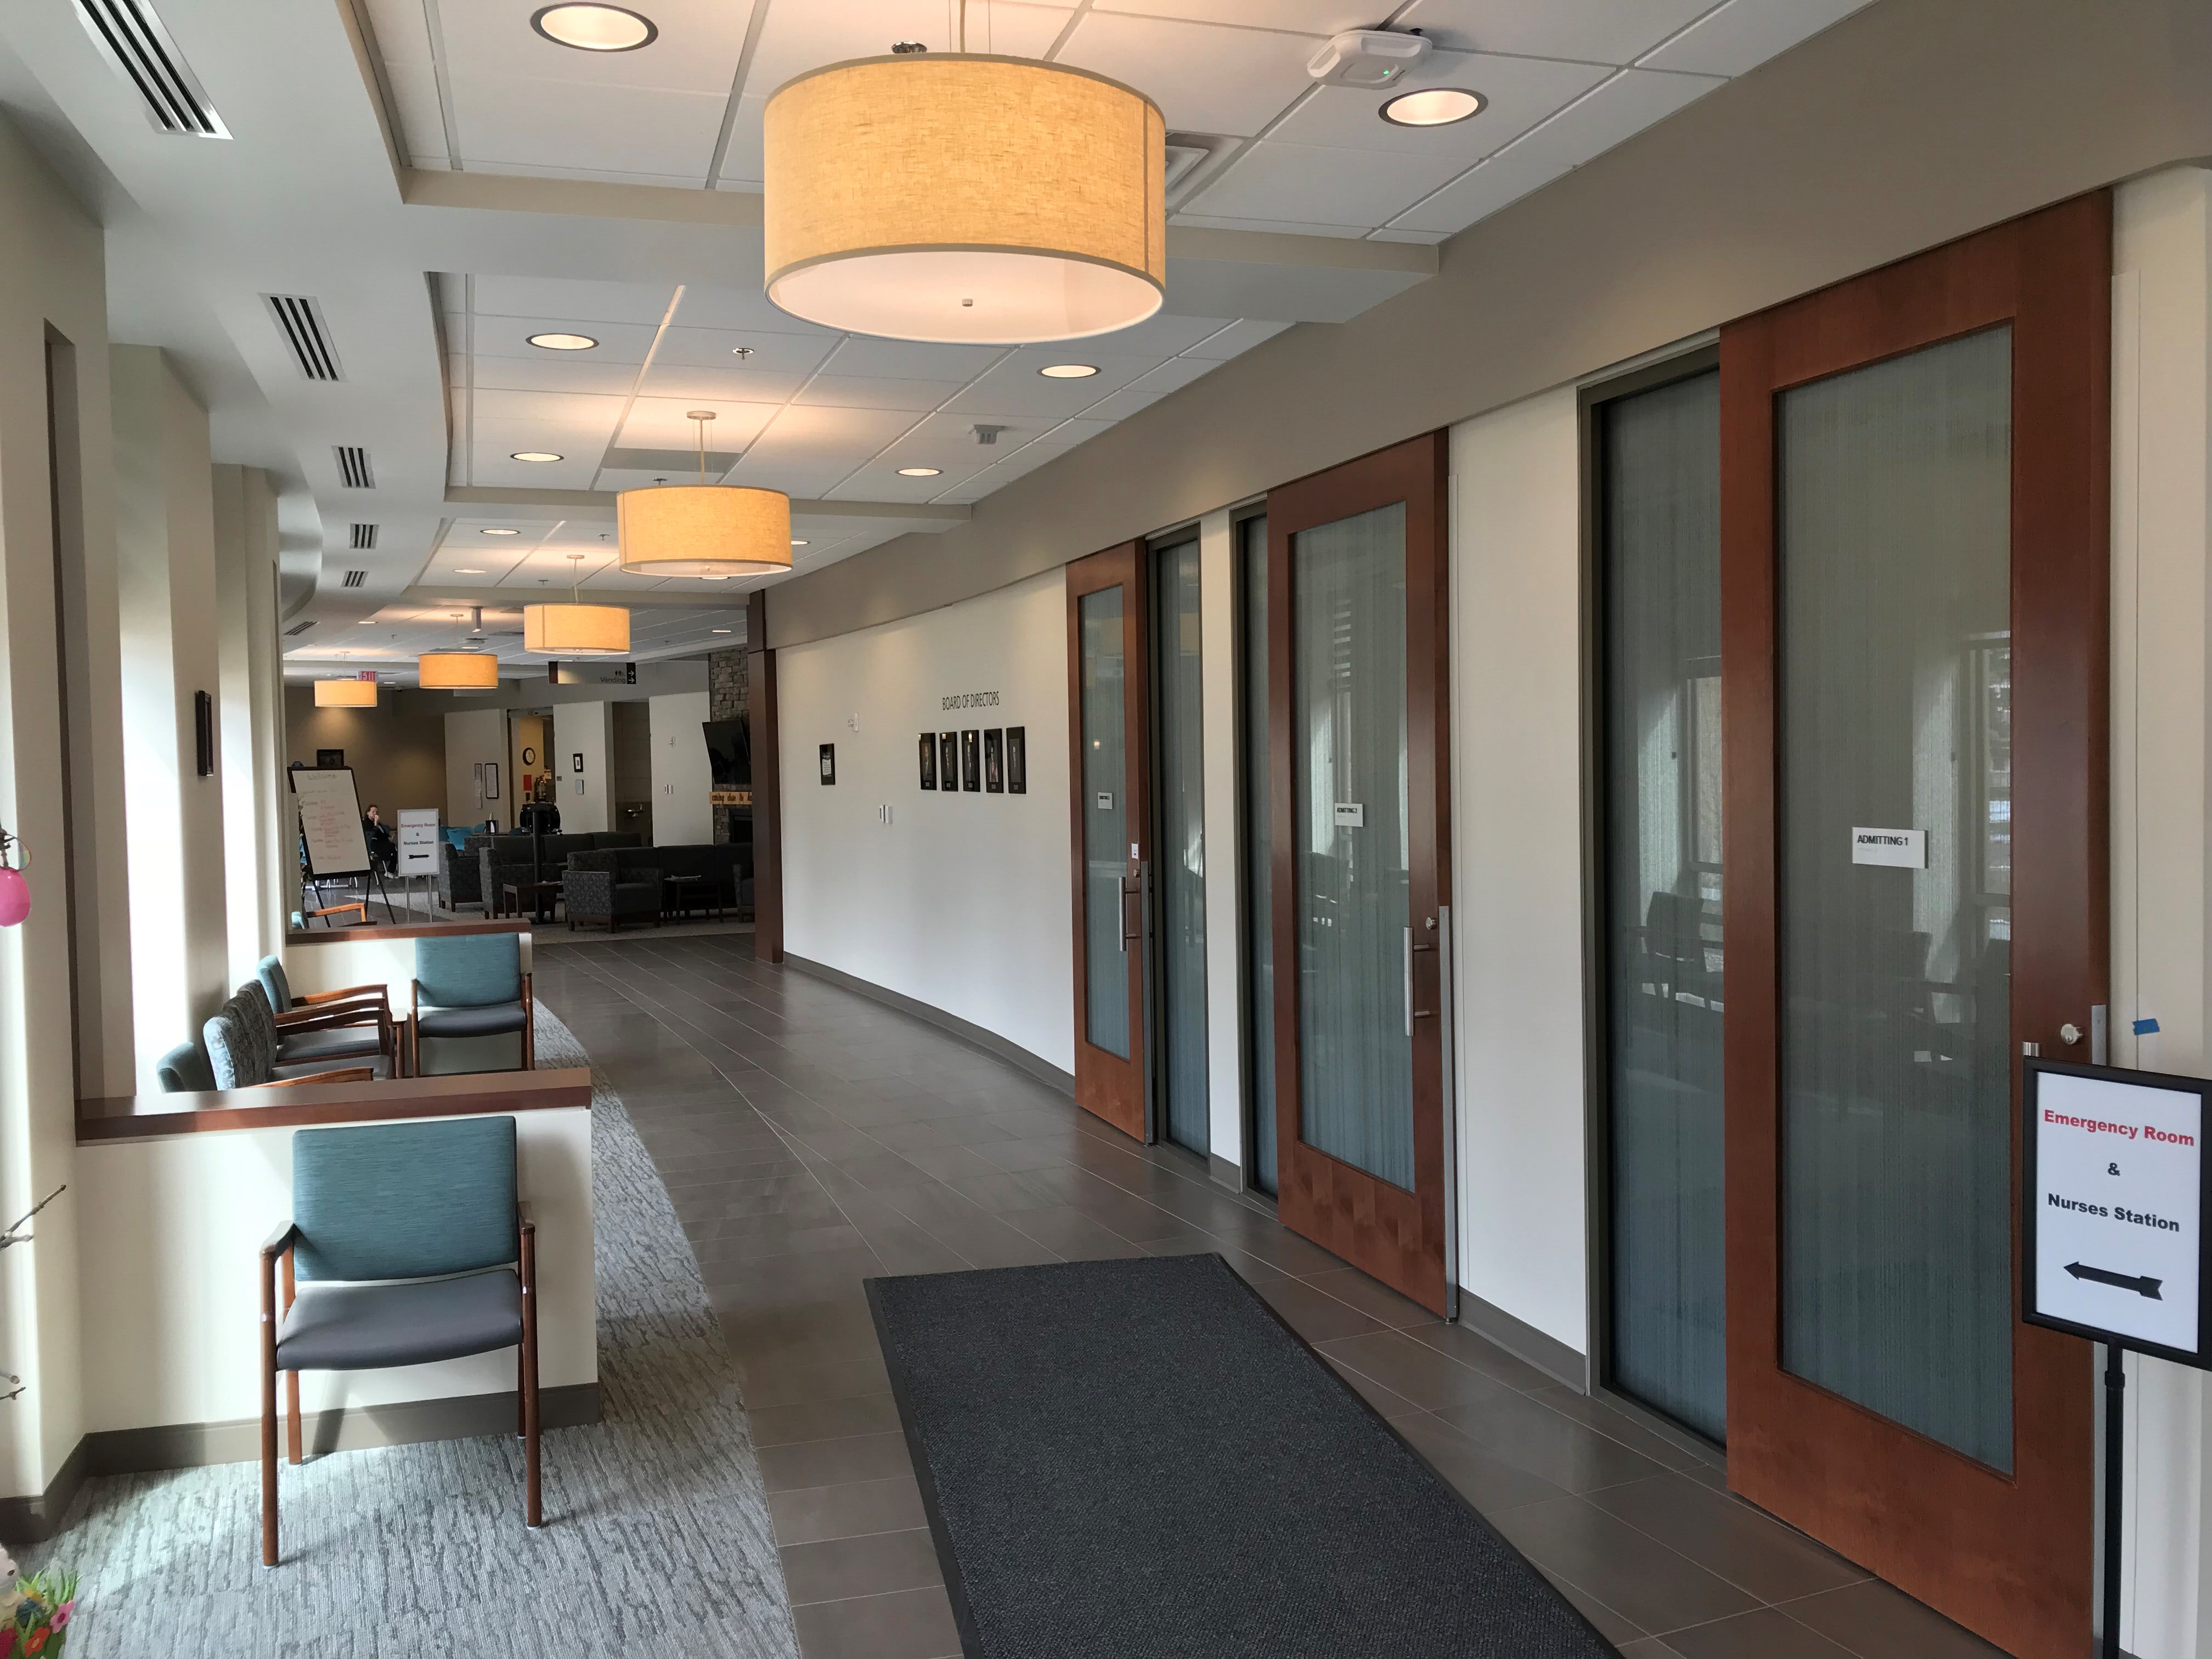 Hawarden Regional Healthcare interior hallway